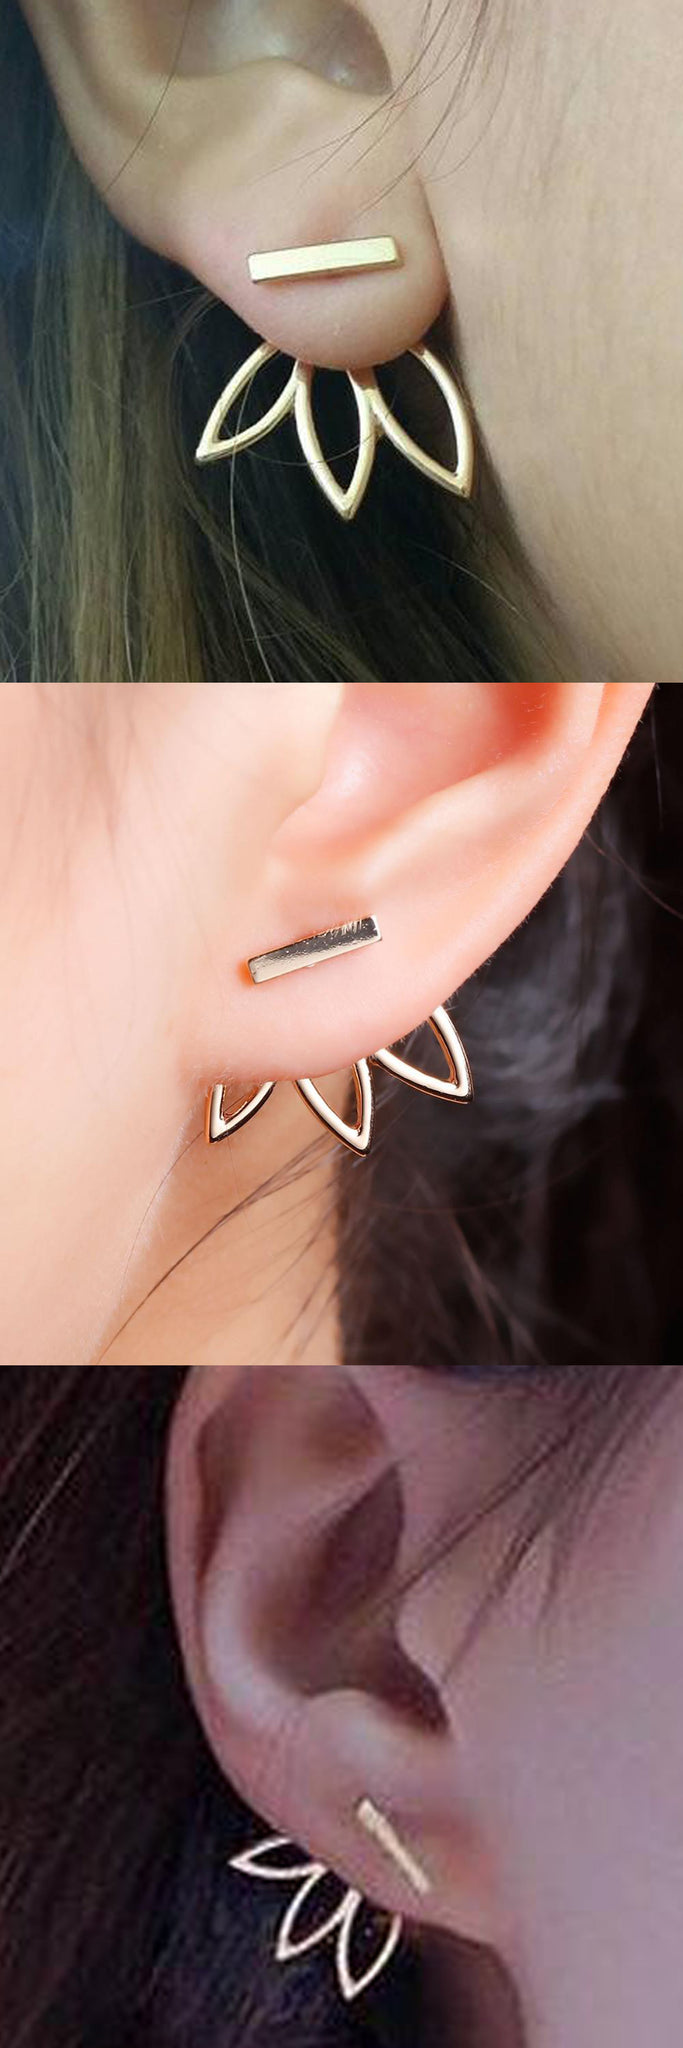 Unusual Ear Piercing Ideas at MyBodiArt.com - Drea Earring Jacket 